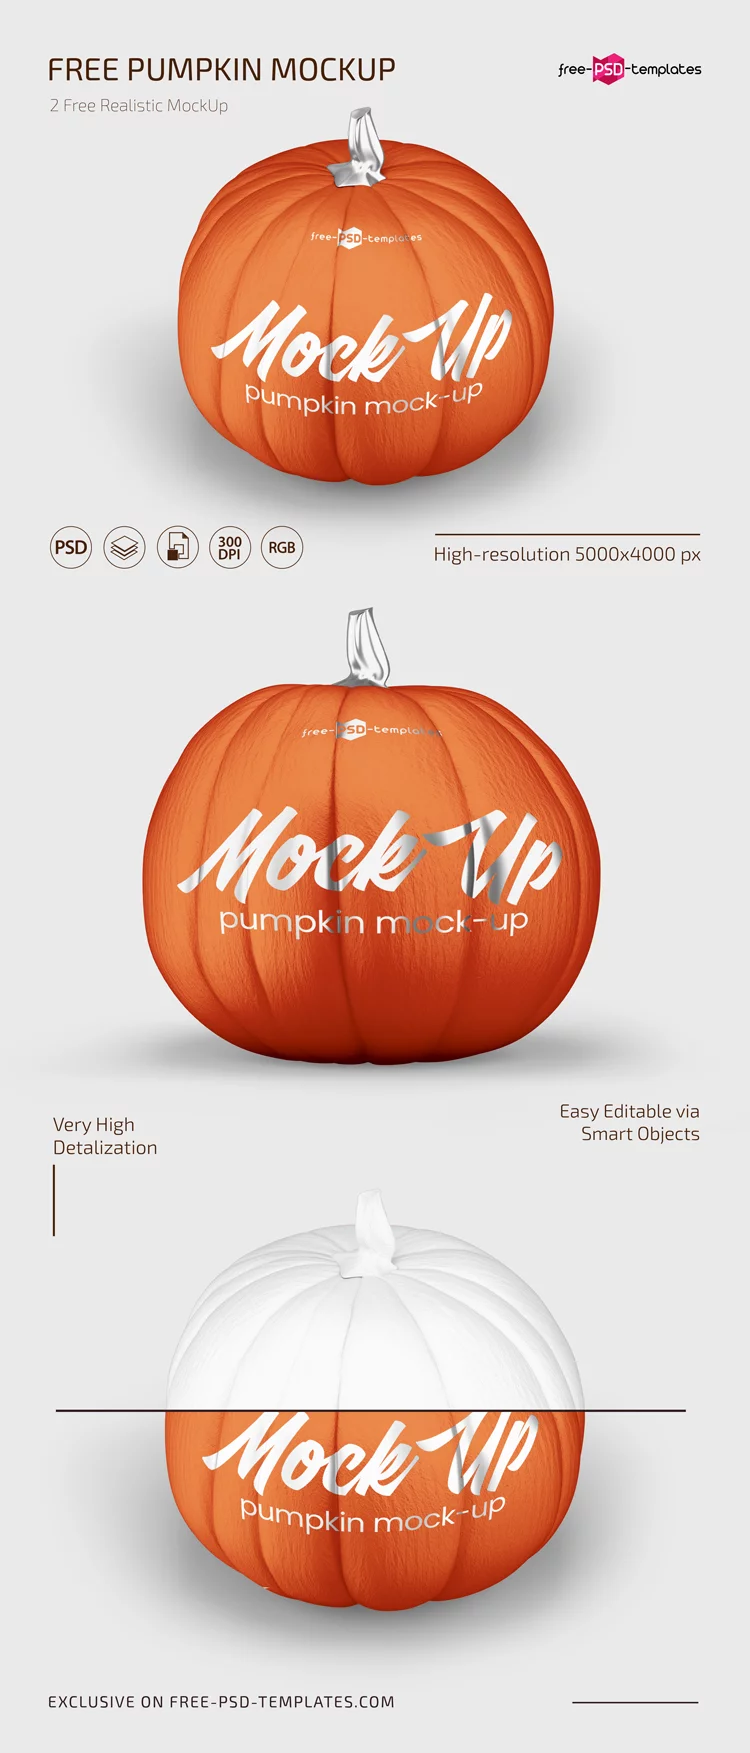 Free Pumpkin Mockup Set in PSD